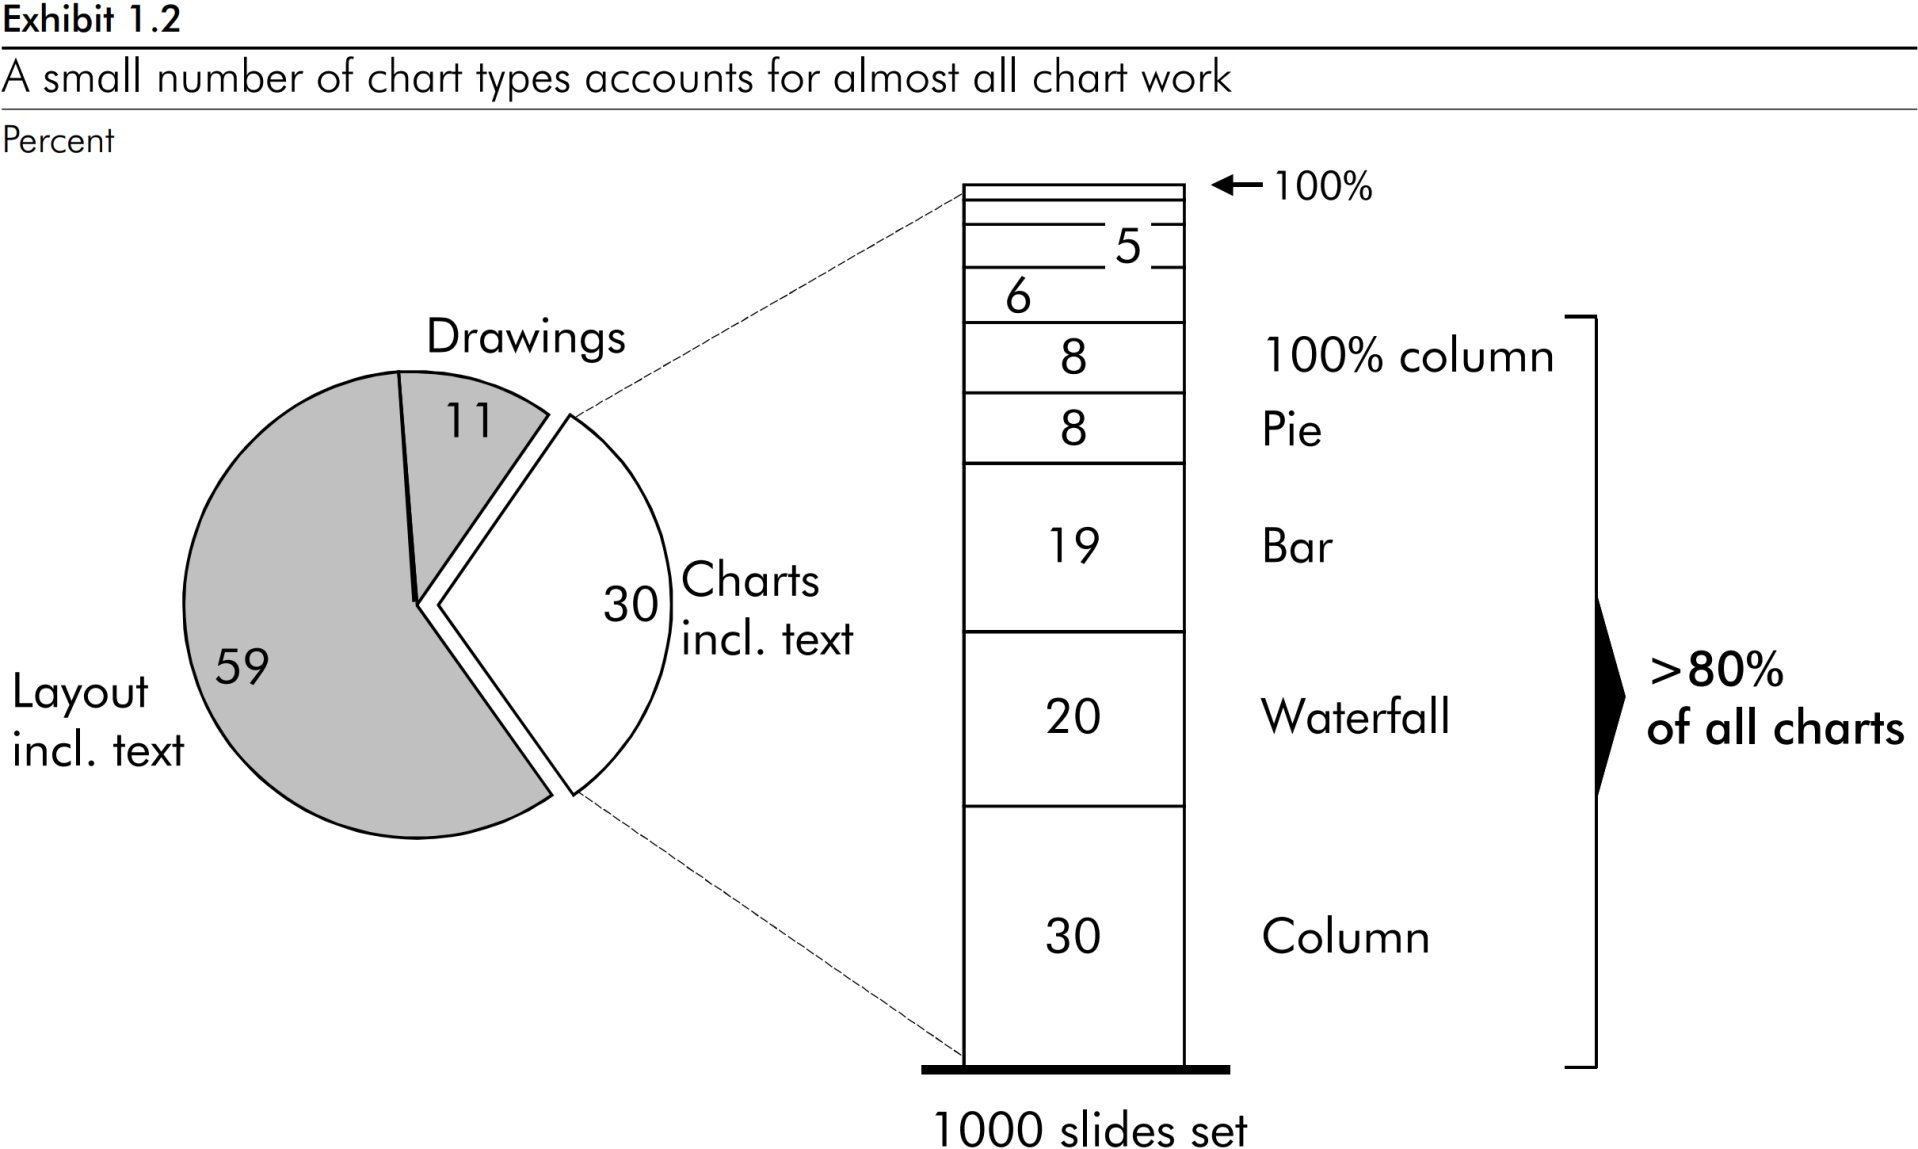 Grafico a torta che mostra che l’85% di tutto il lavoro di produzione dei grafici viene svolto solo in 5 tipi di grafico: colonna 100%, a torta, a barre, a cascata e istogramma.